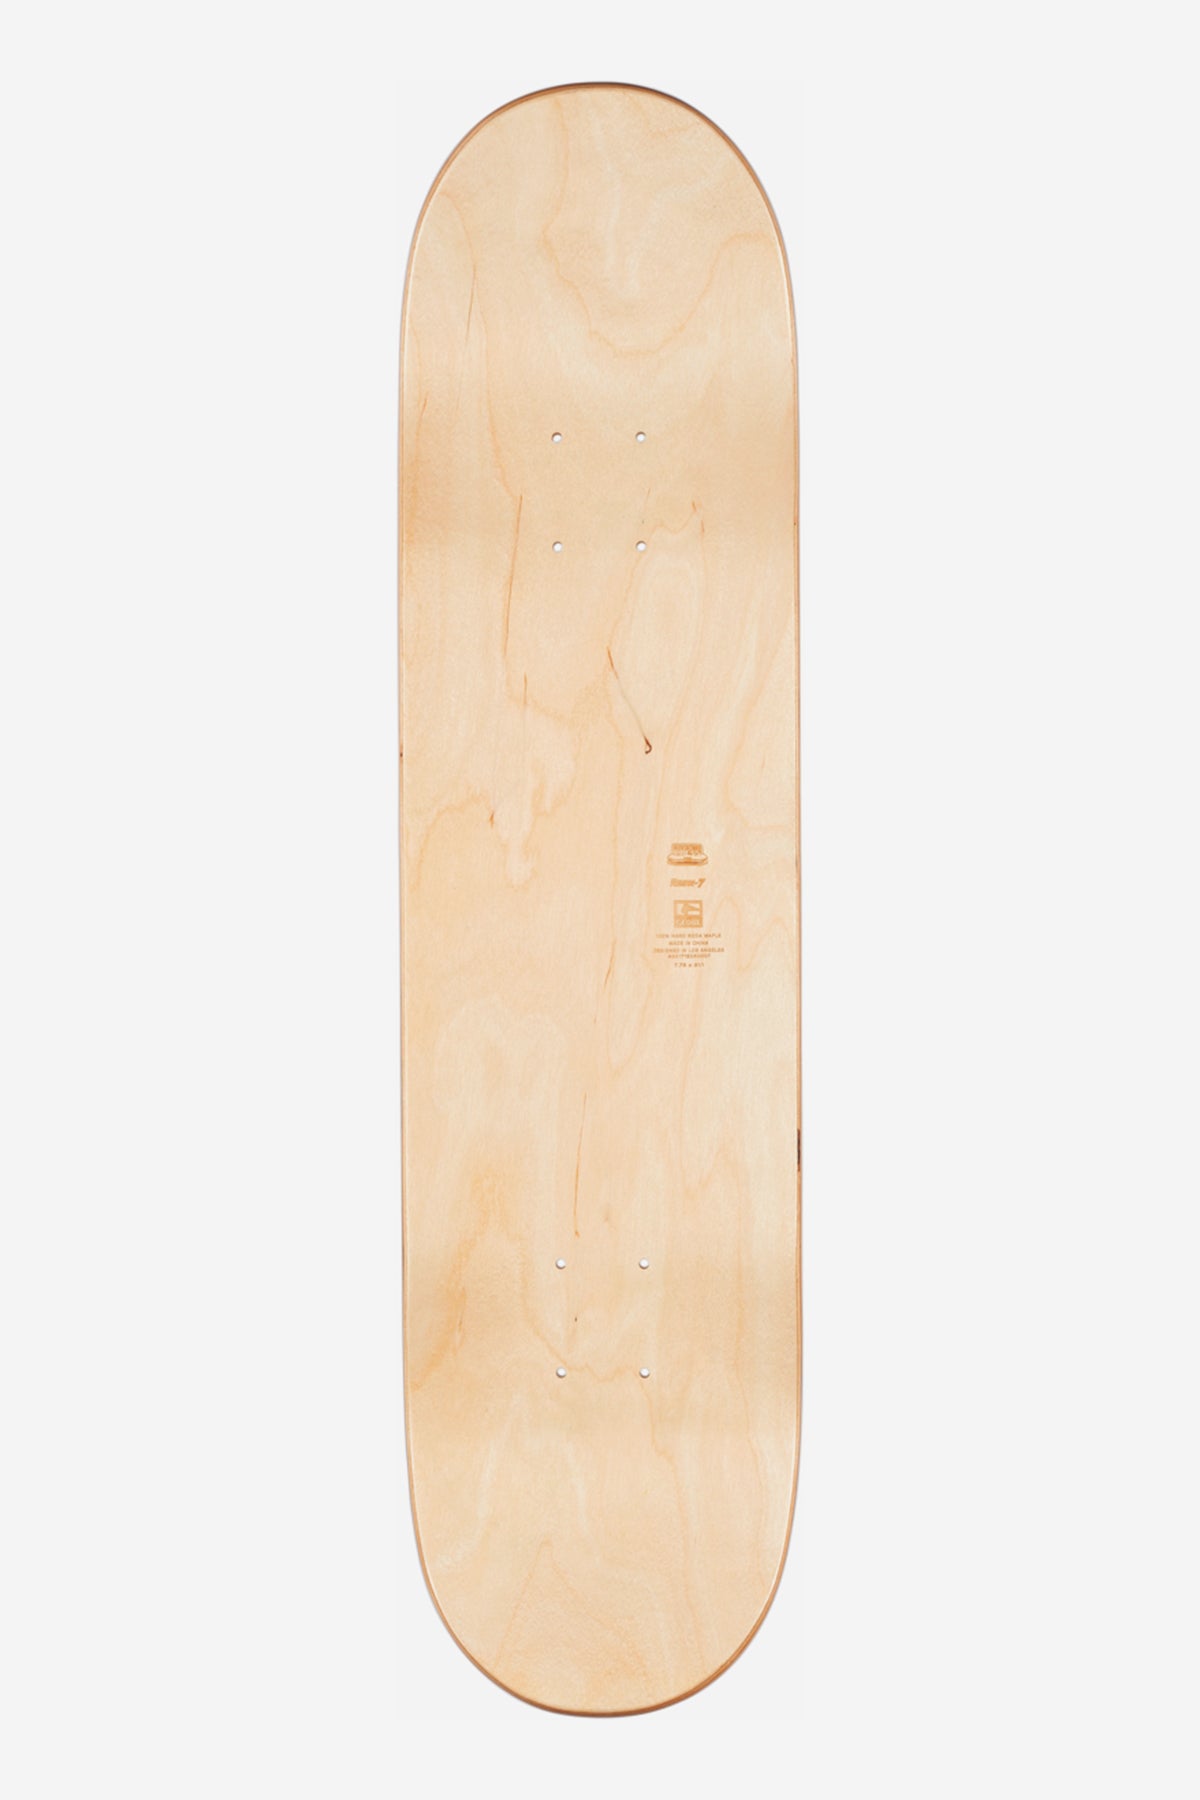 Globe - Goodstock - Clay - 8.5" (en anglais) Skateboard Deck